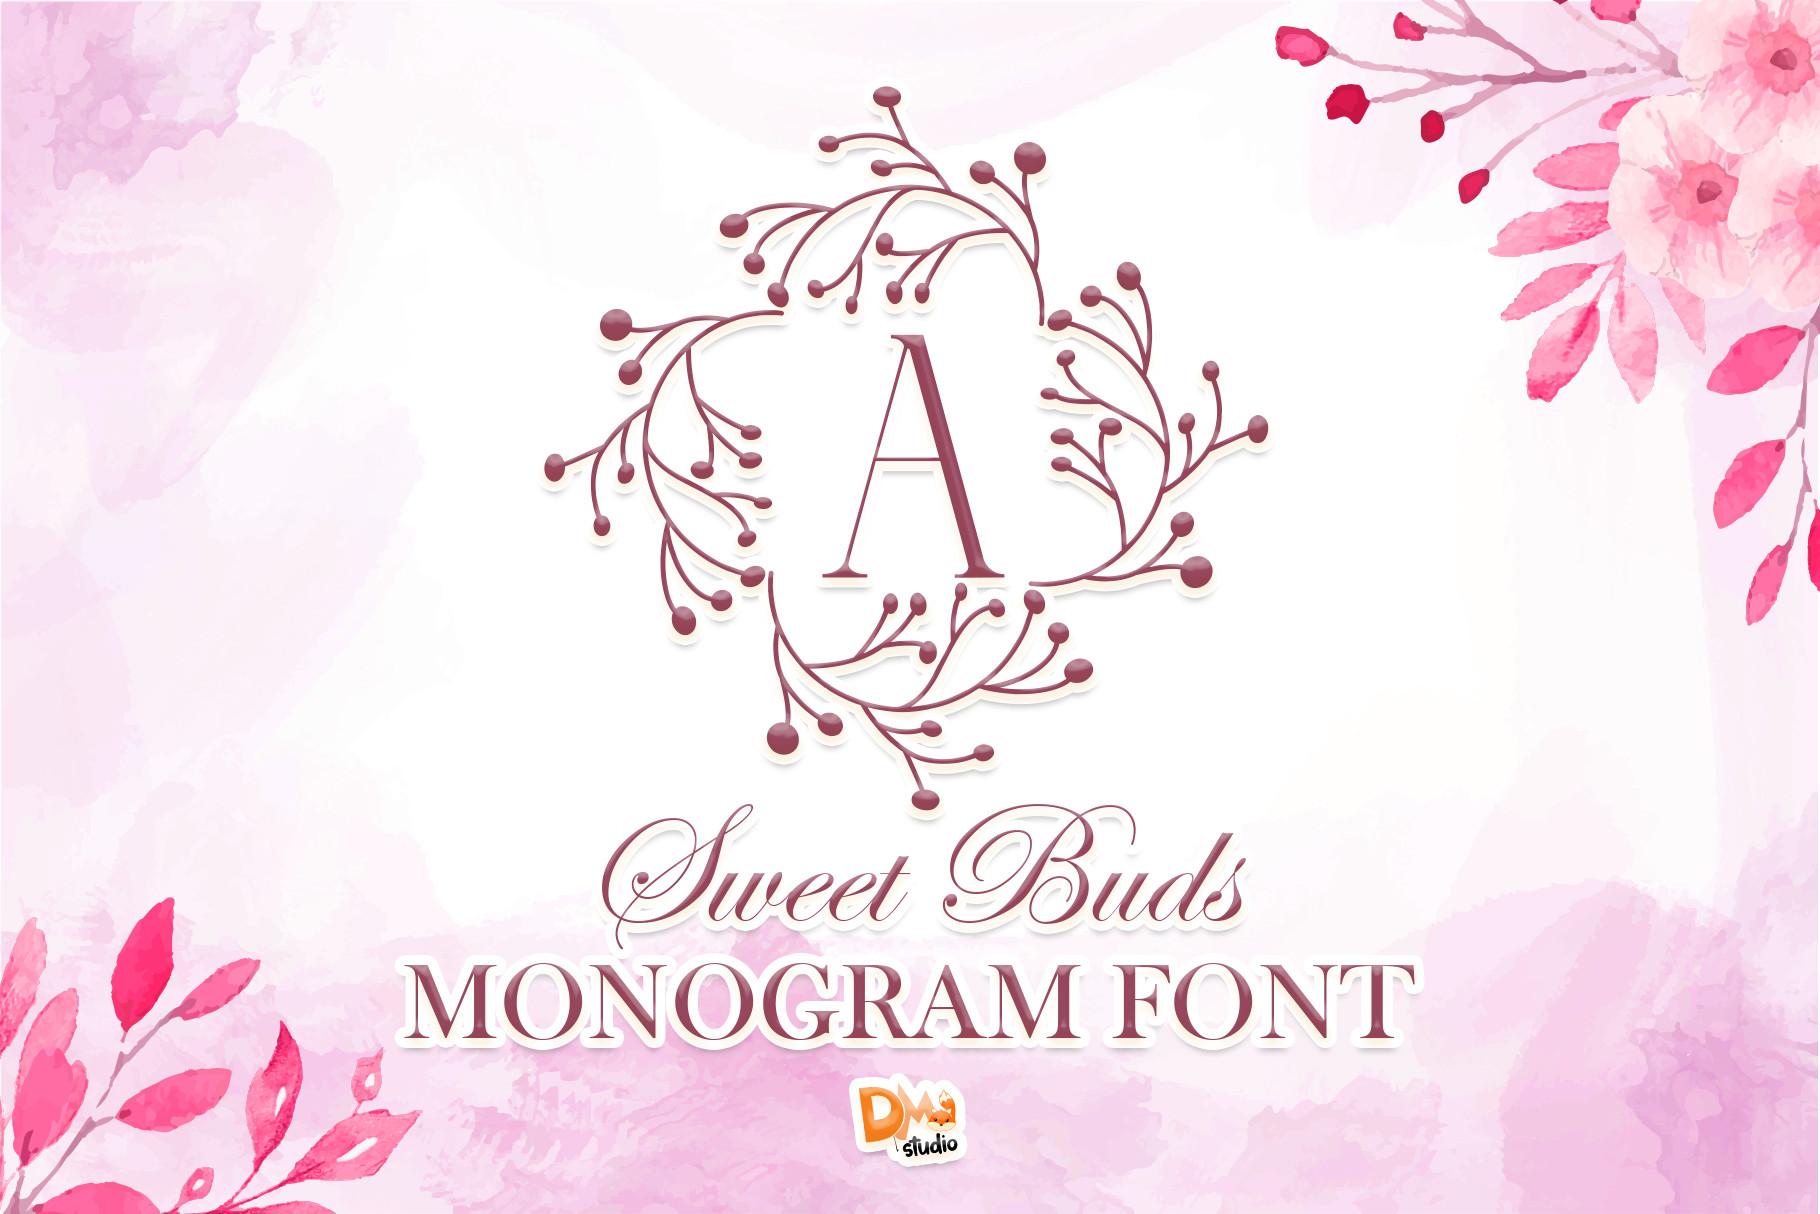 Sweet Buds Monogram Font Free & Premium Download